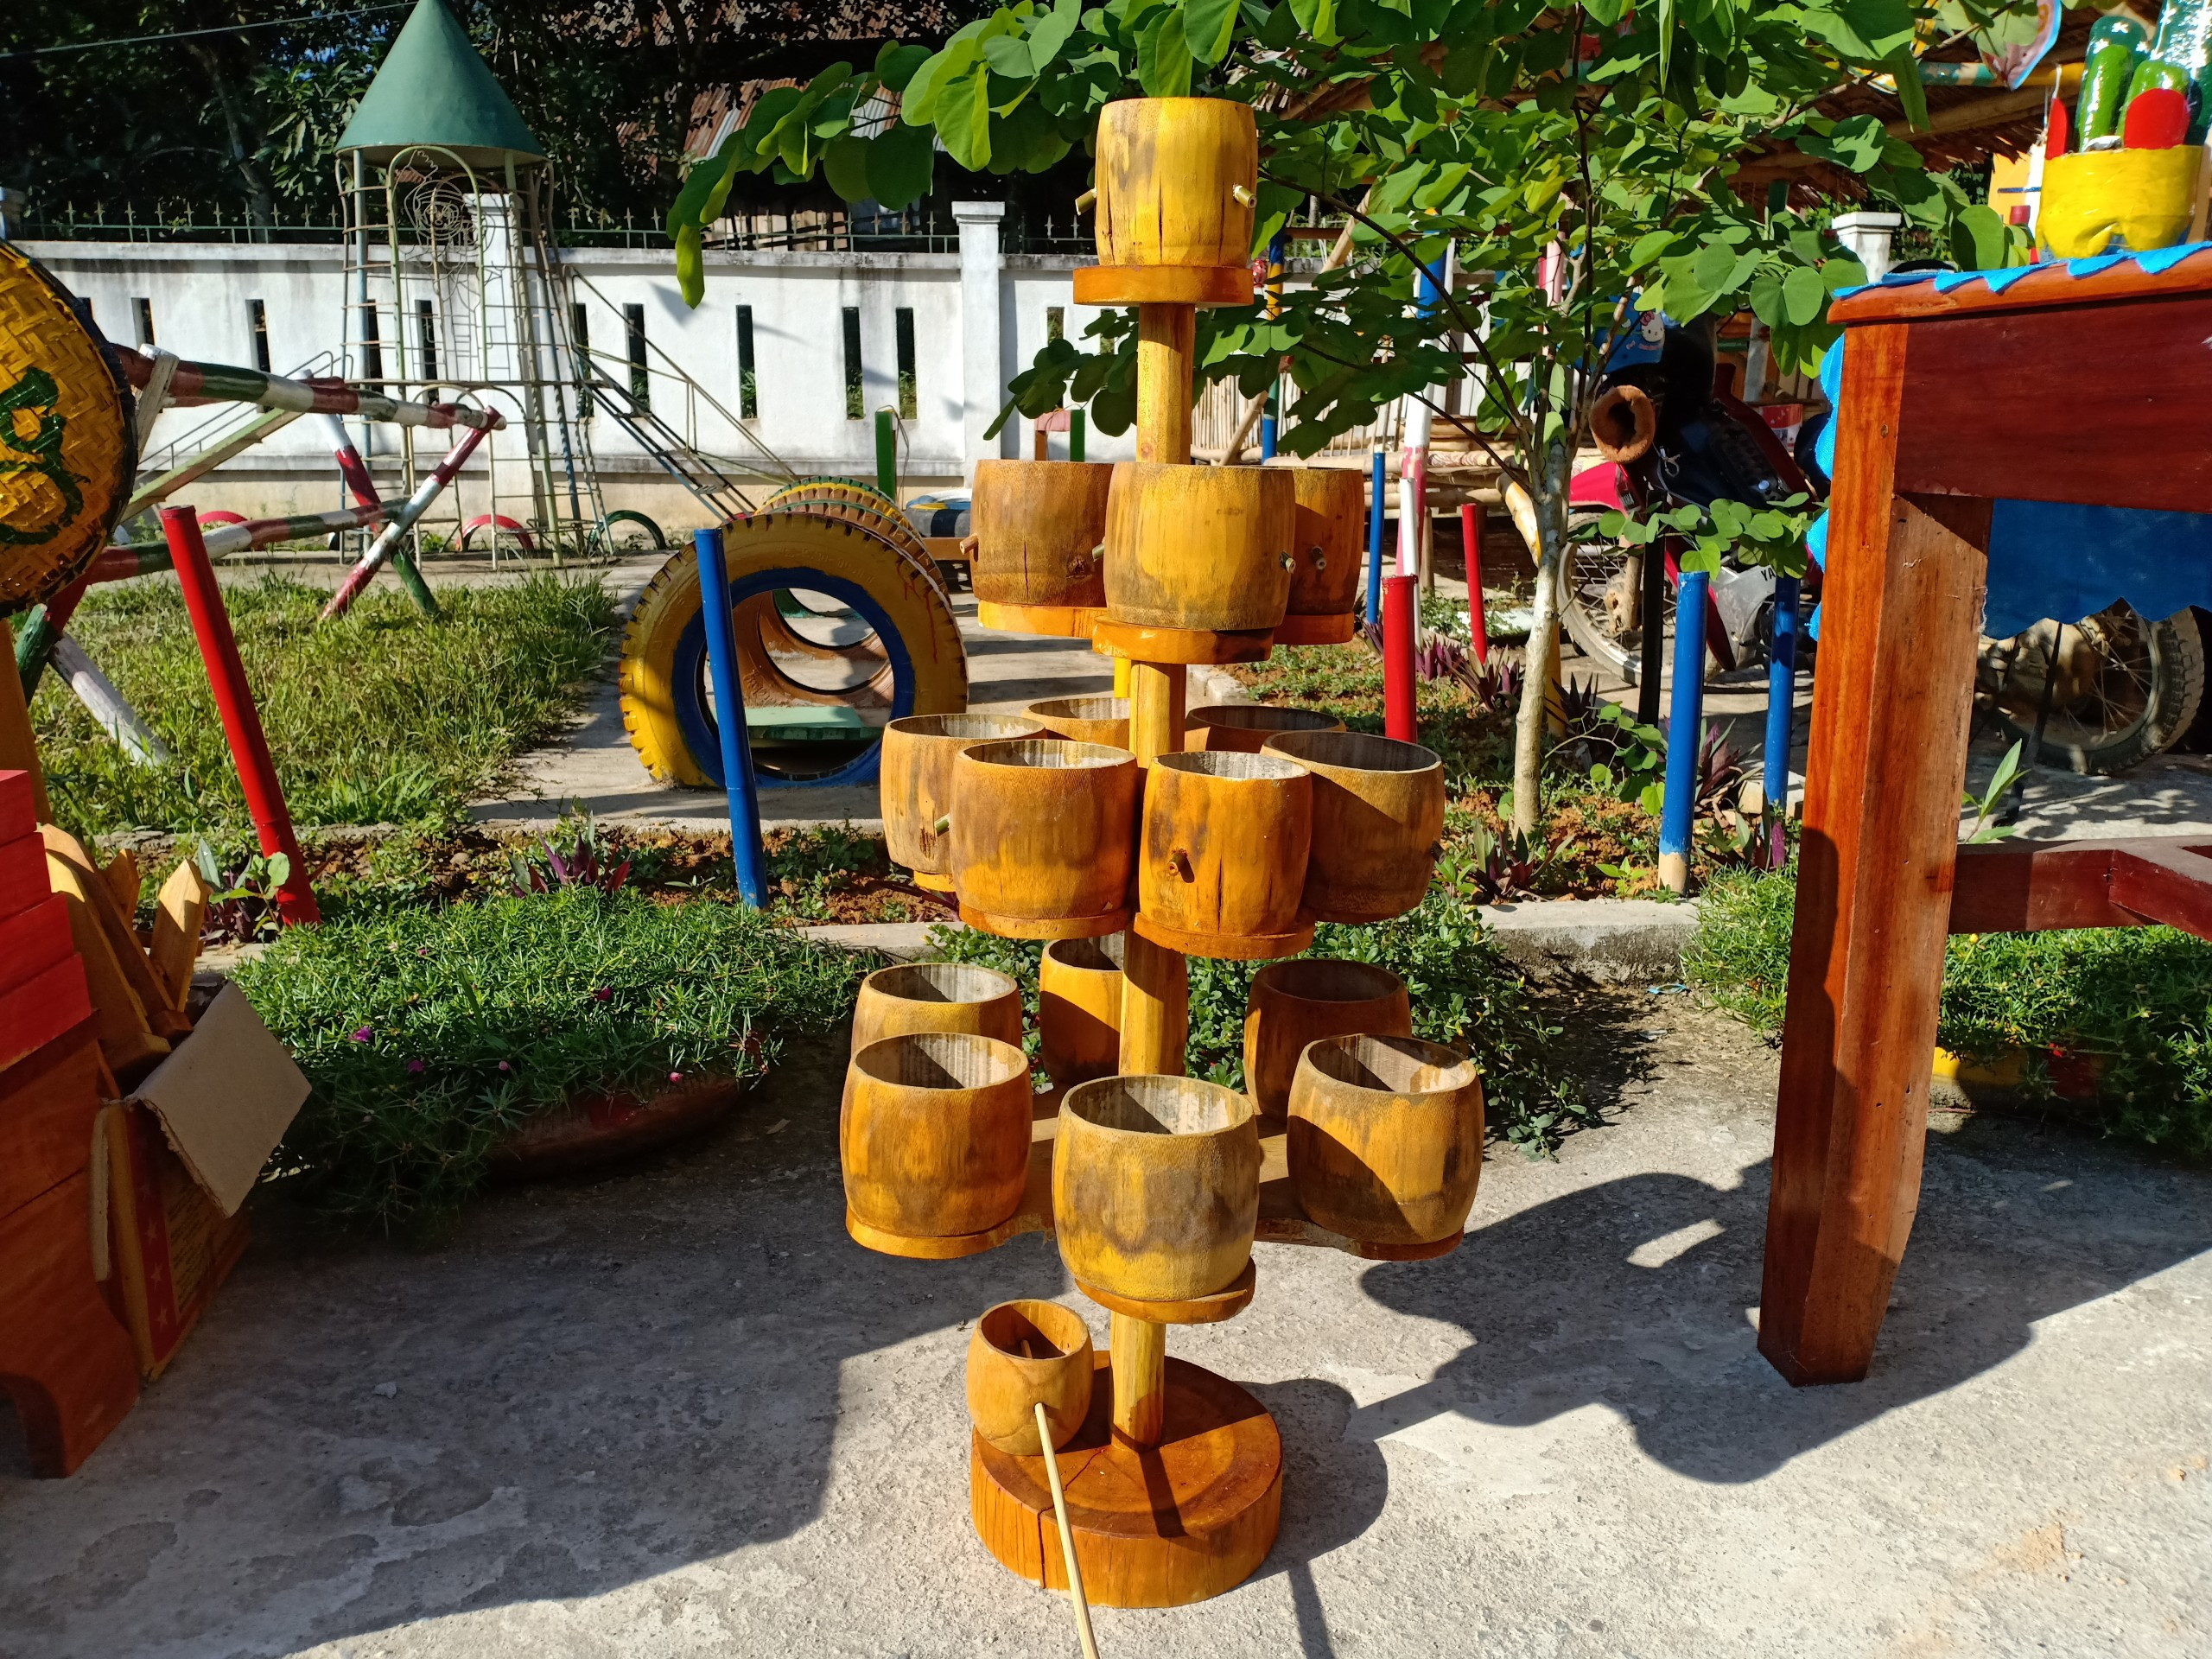 3.Gần như các loại đồ chơi đều được giáo viên, phụ huynh làm từ các nguyên liệu sẵn có tại địa phương như mét, gỗ, nứa…Ảnh: Đình Tuân